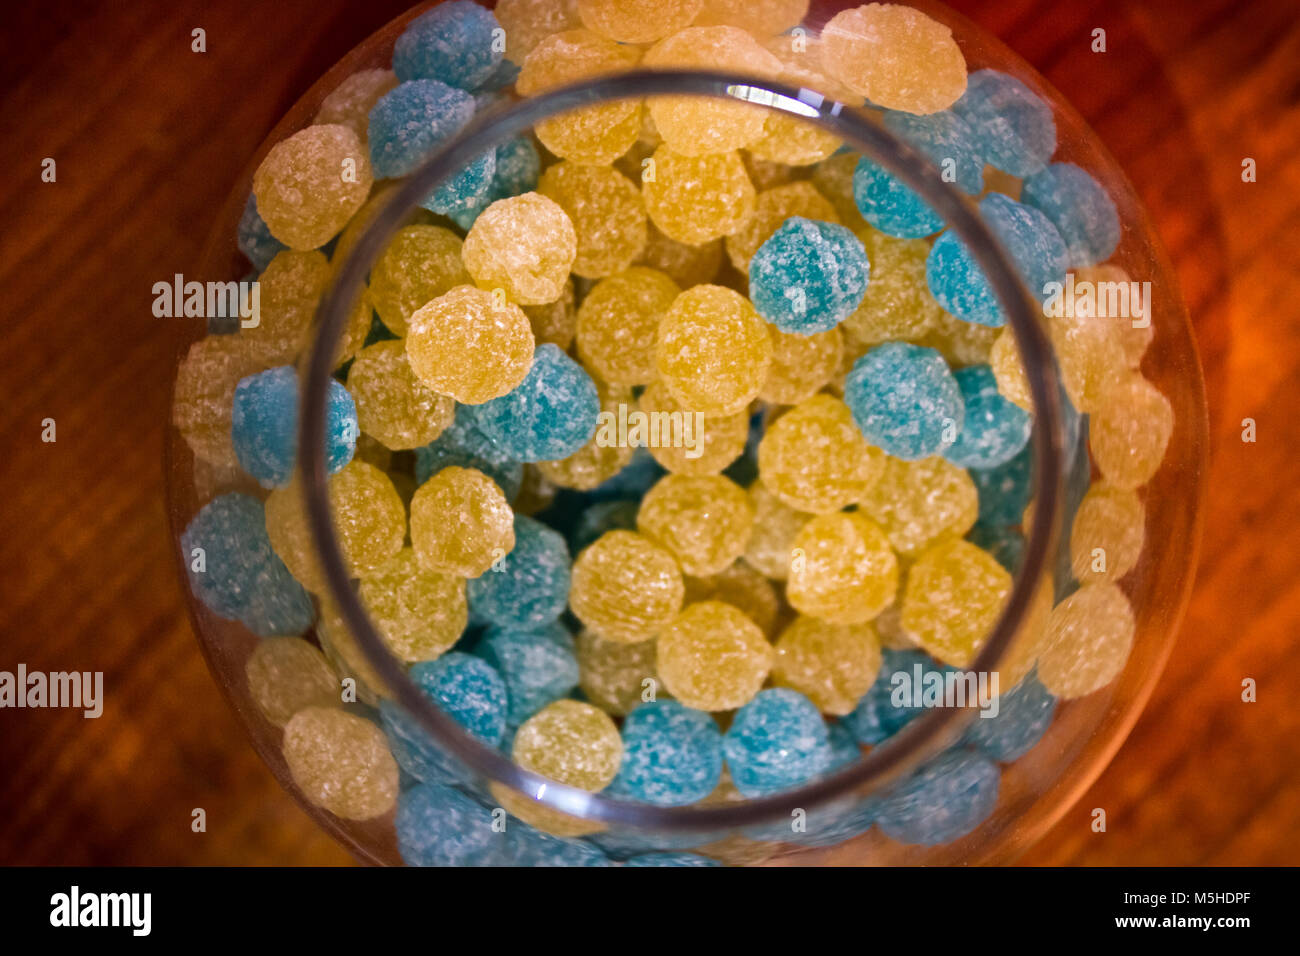 Ouvert toute l'avec bol en verre jaune et bleu givré candy on wooden table Banque D'Images